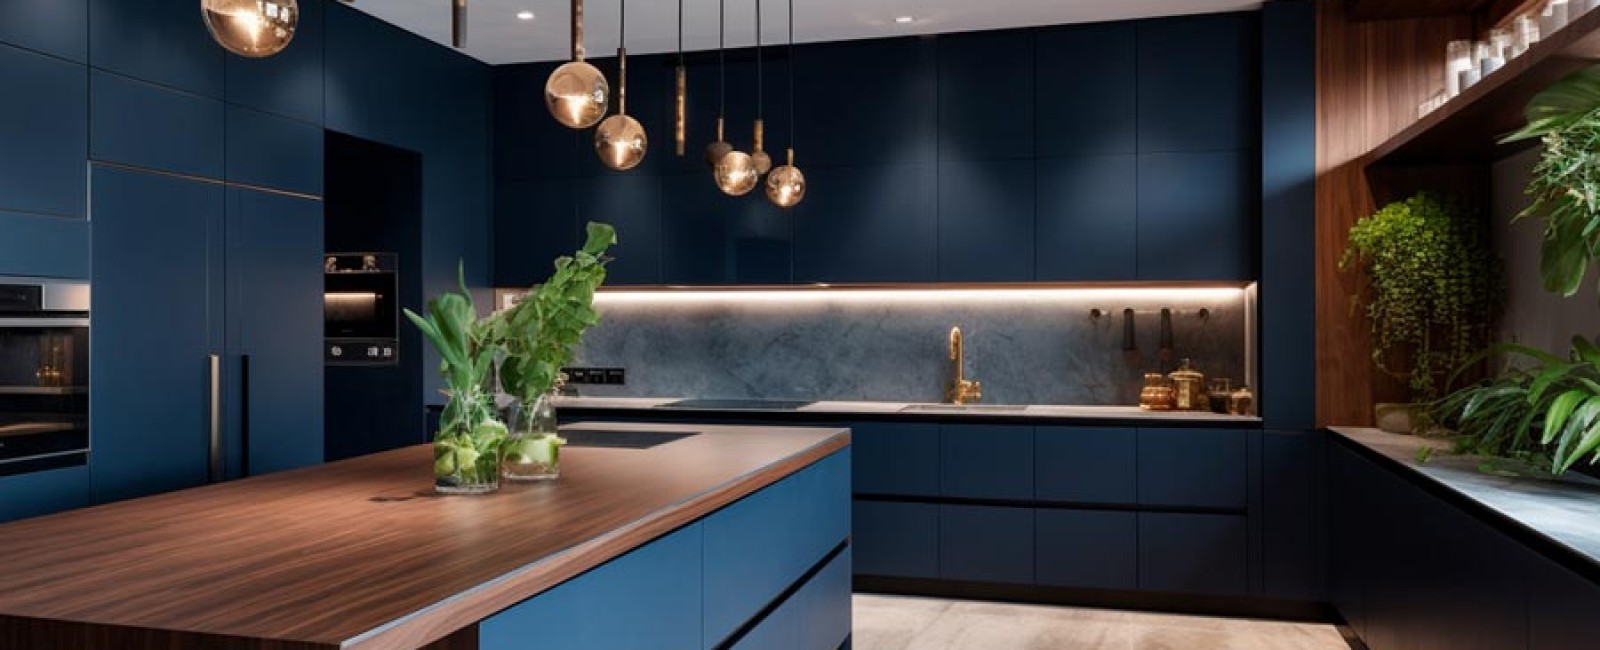 A Modern minimalist kitchen with stainless steel appliances and a dark blue backsplash